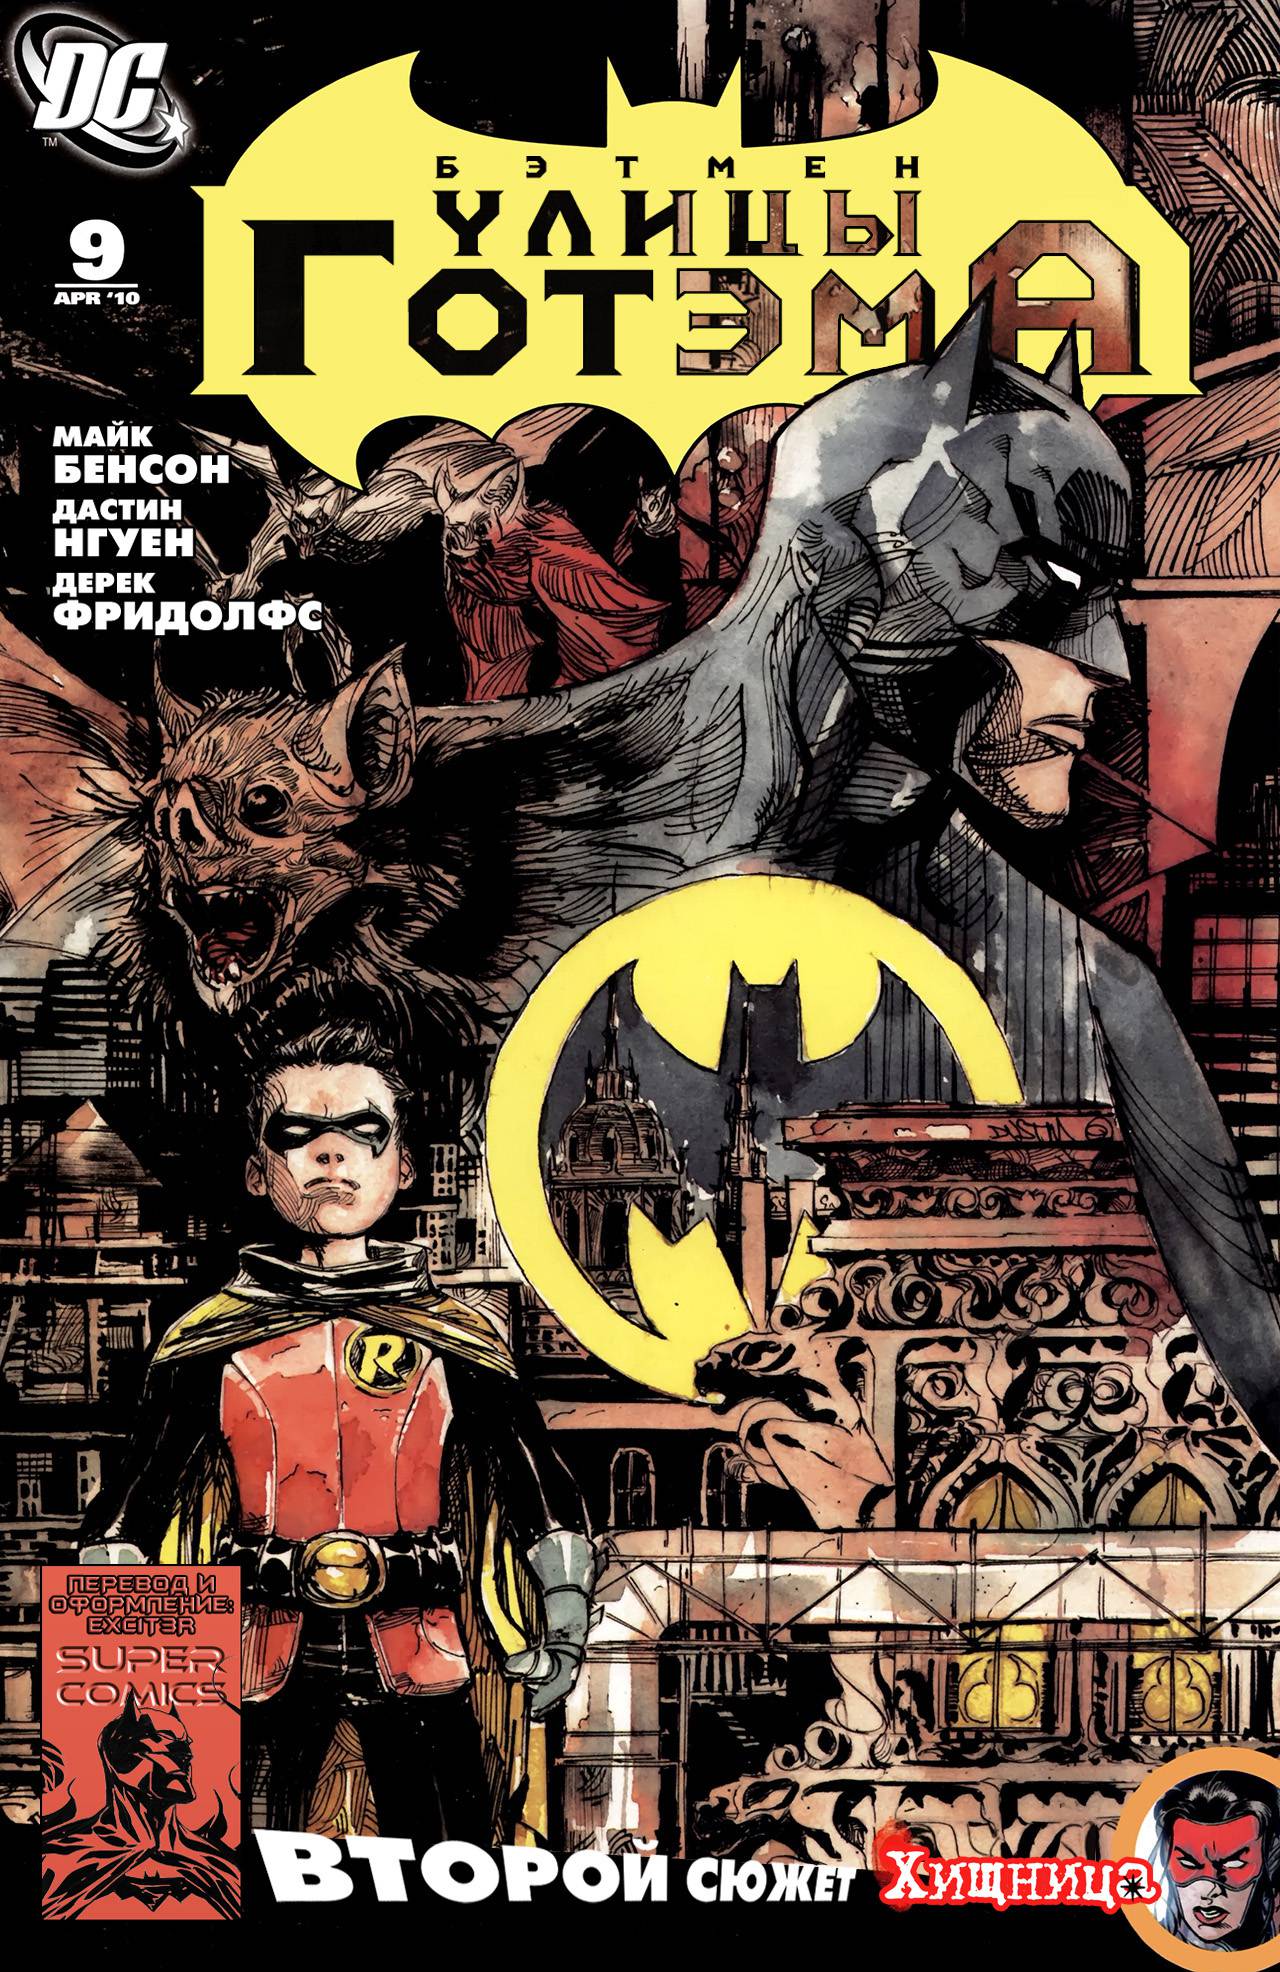 Бэтмен: Улицы Готэма №9 онлайн